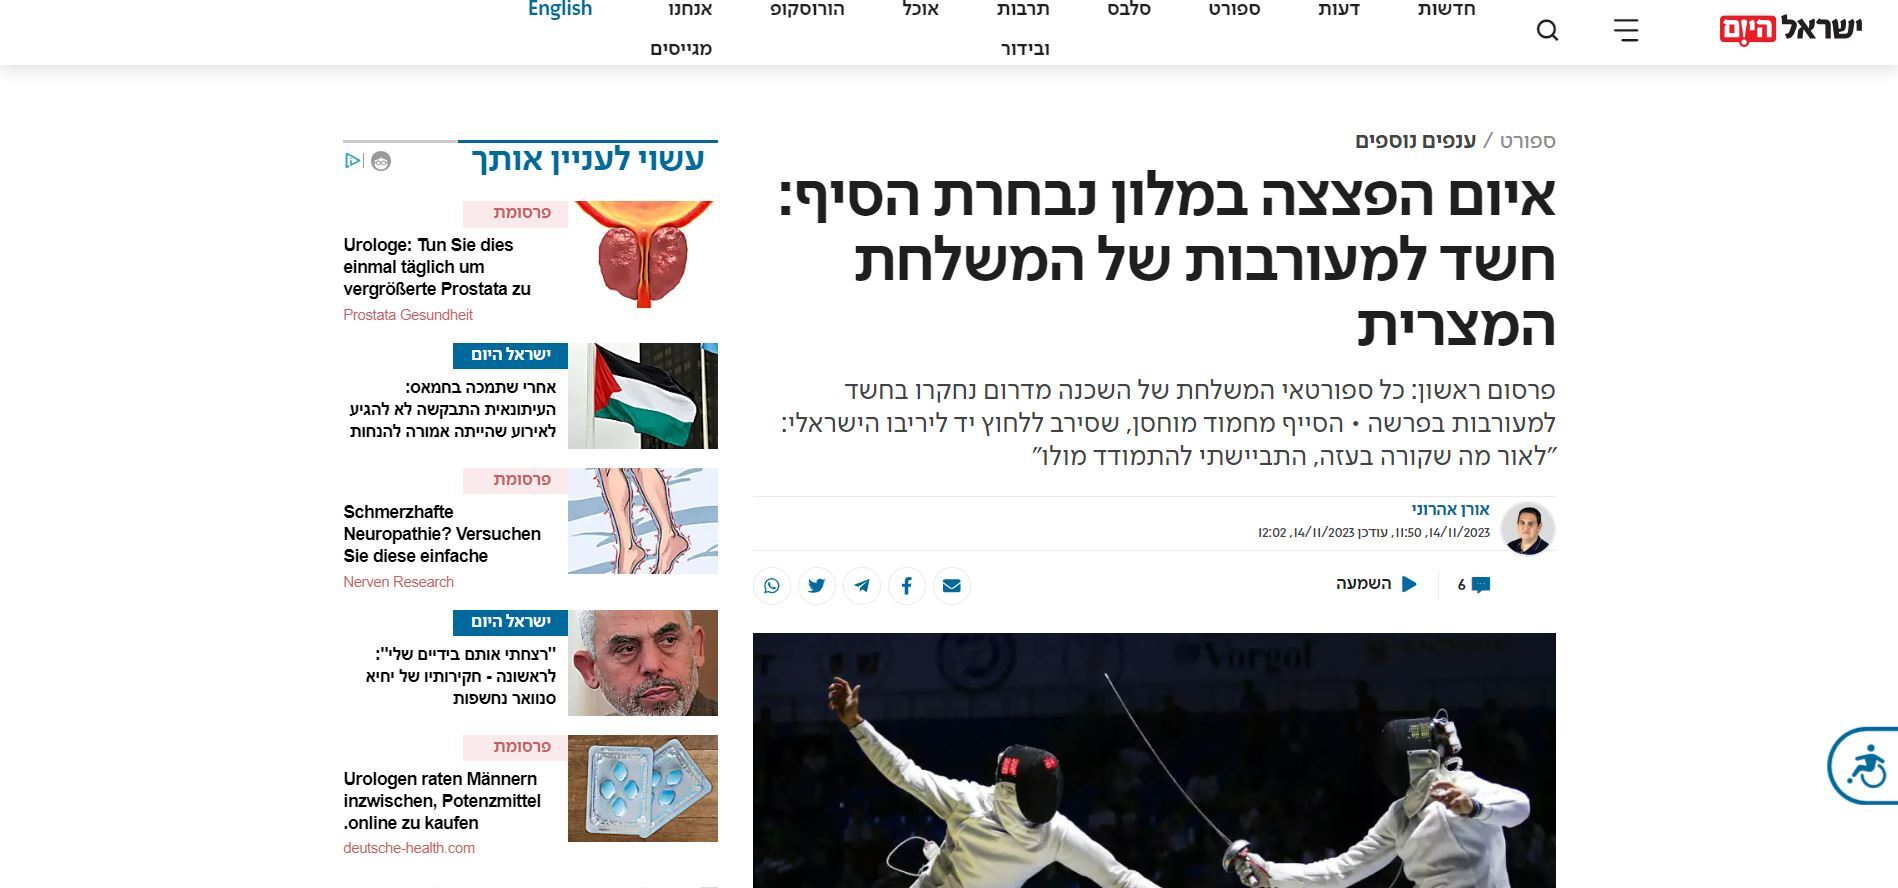 وسائل إعلام عبرية تتهم فريق المبارزة المصري بعد تهديد بوجود قنبلة في مقر إقامة الفريق الإسرائيلي